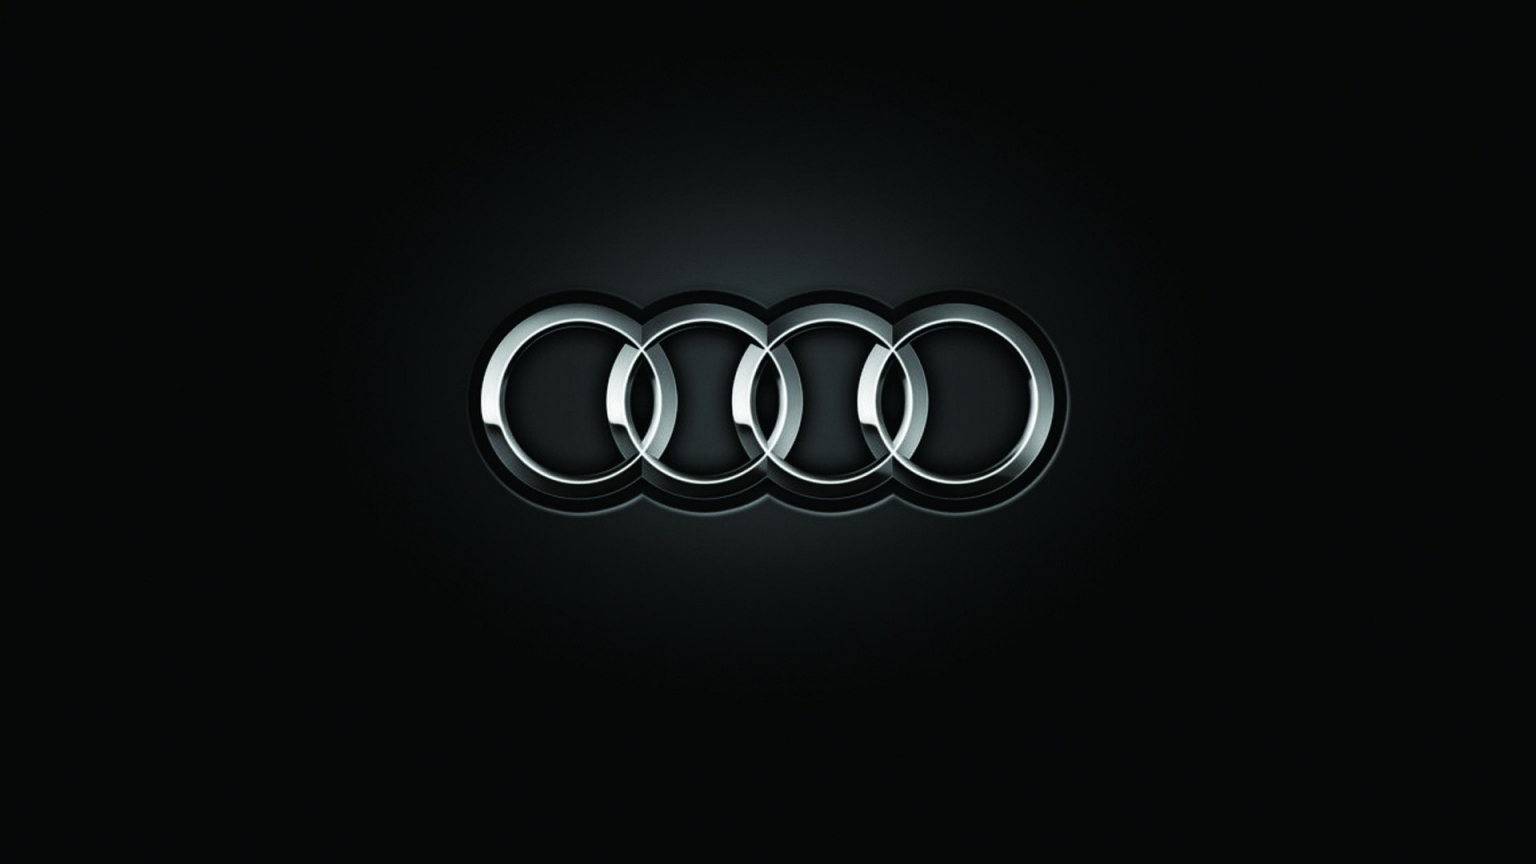 Audi Logo for 1536 x 864 HDTV resolution